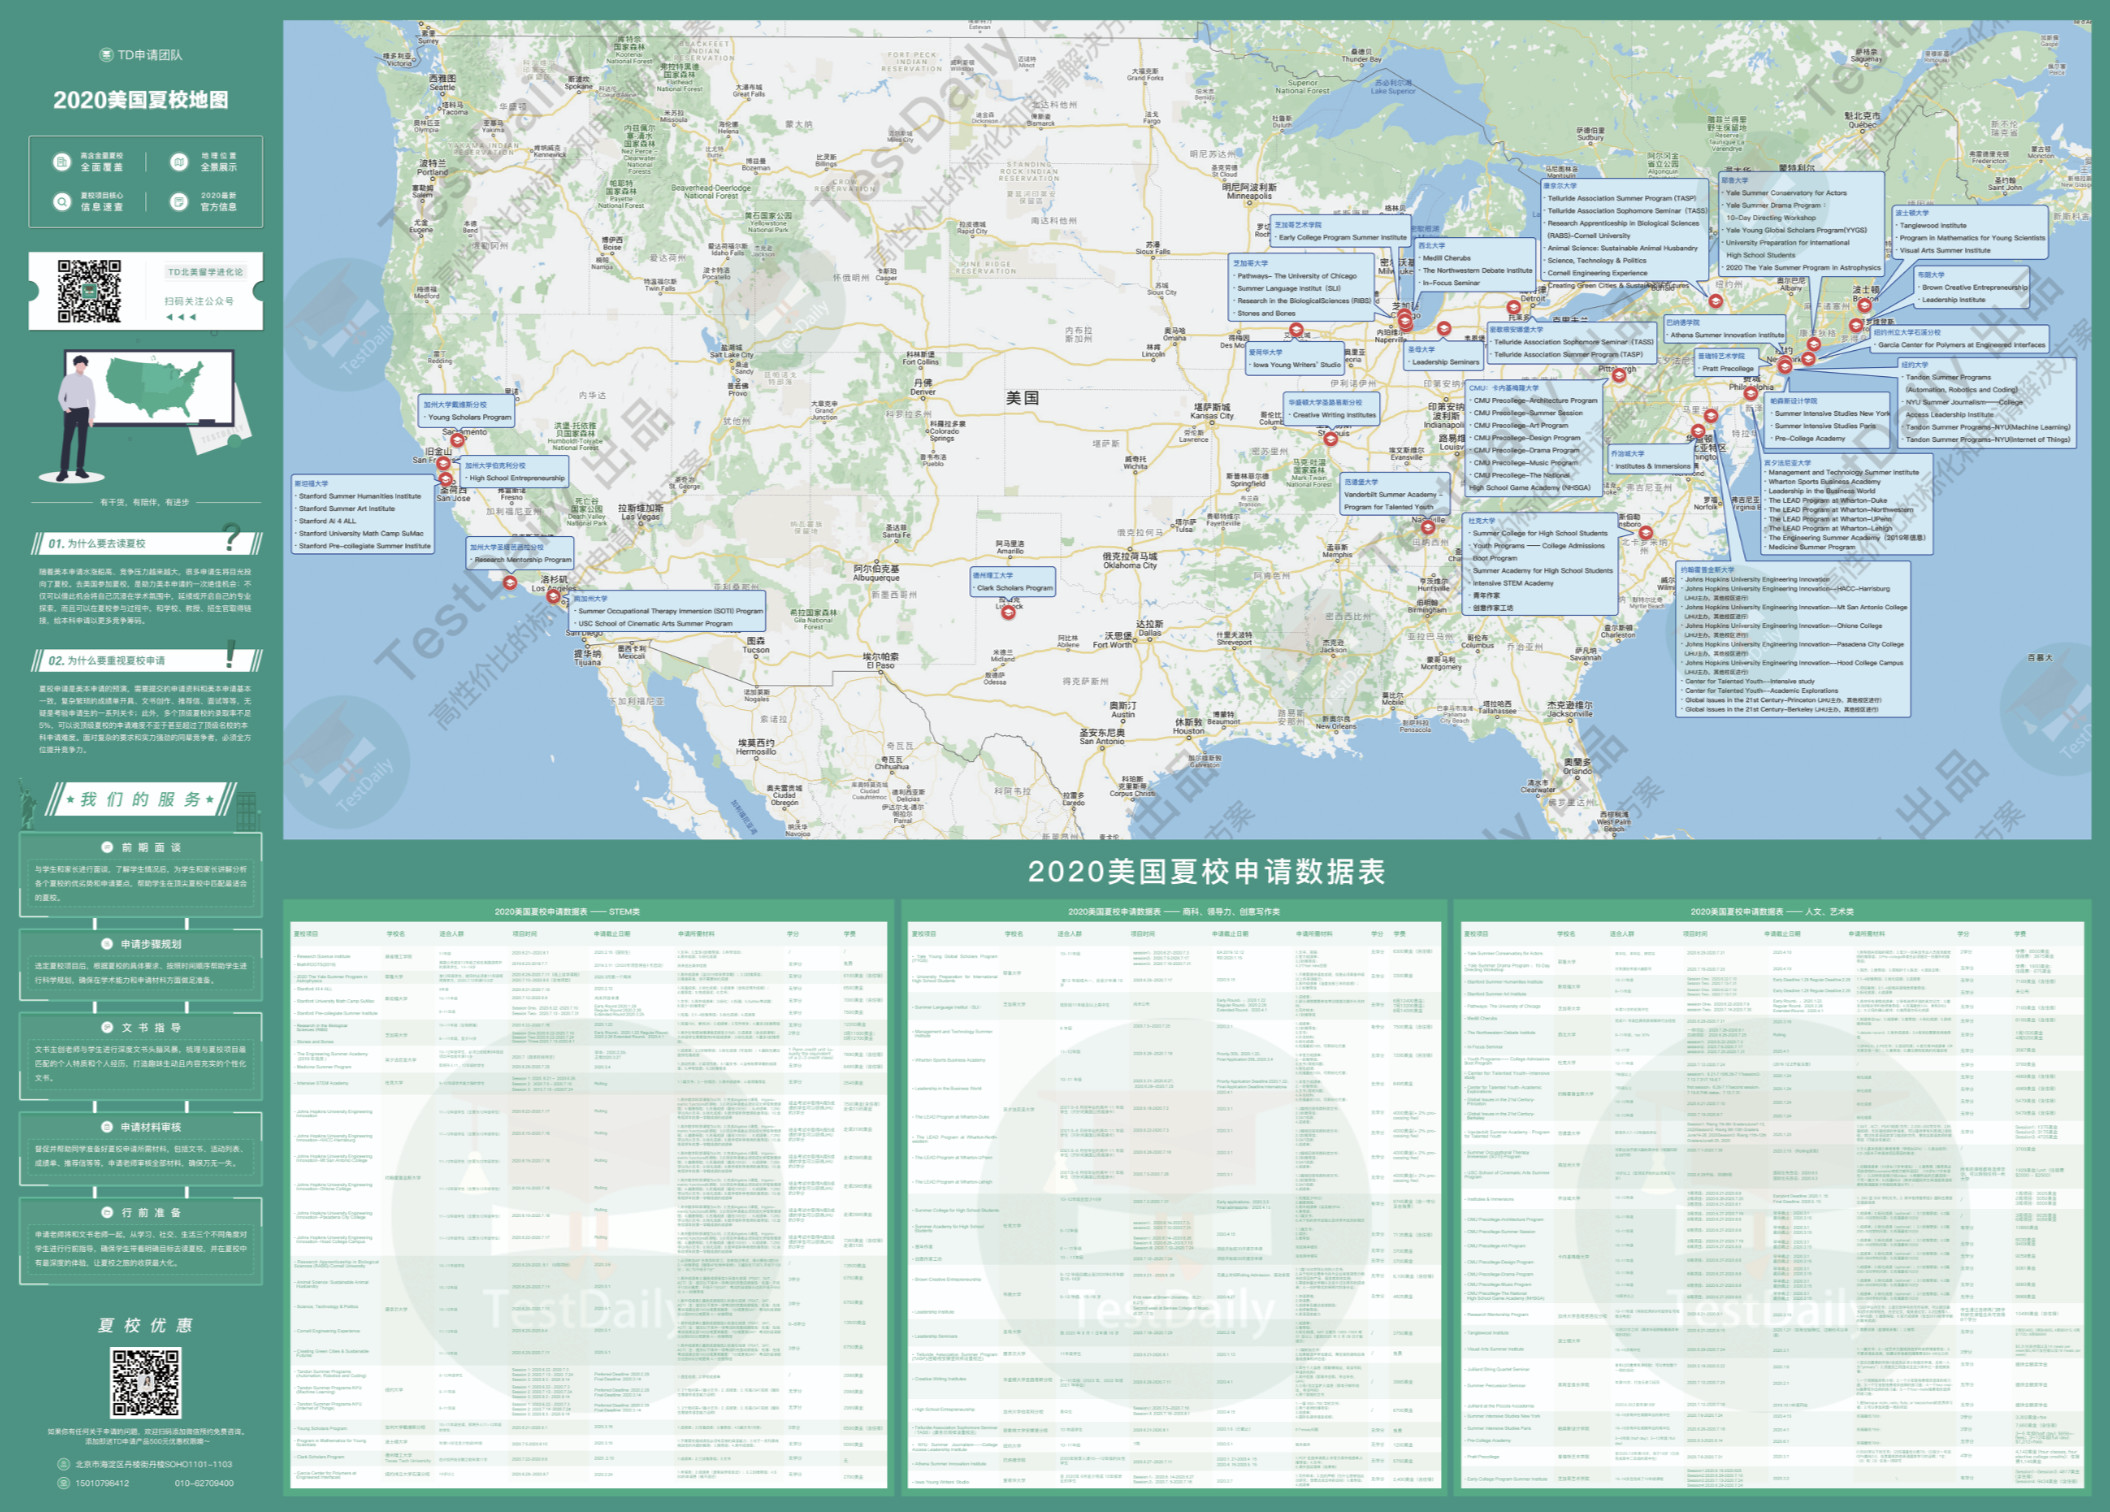 2020最新美国夏校地图，高含金量夏校申请/地理位置信息全覆盖，免费送